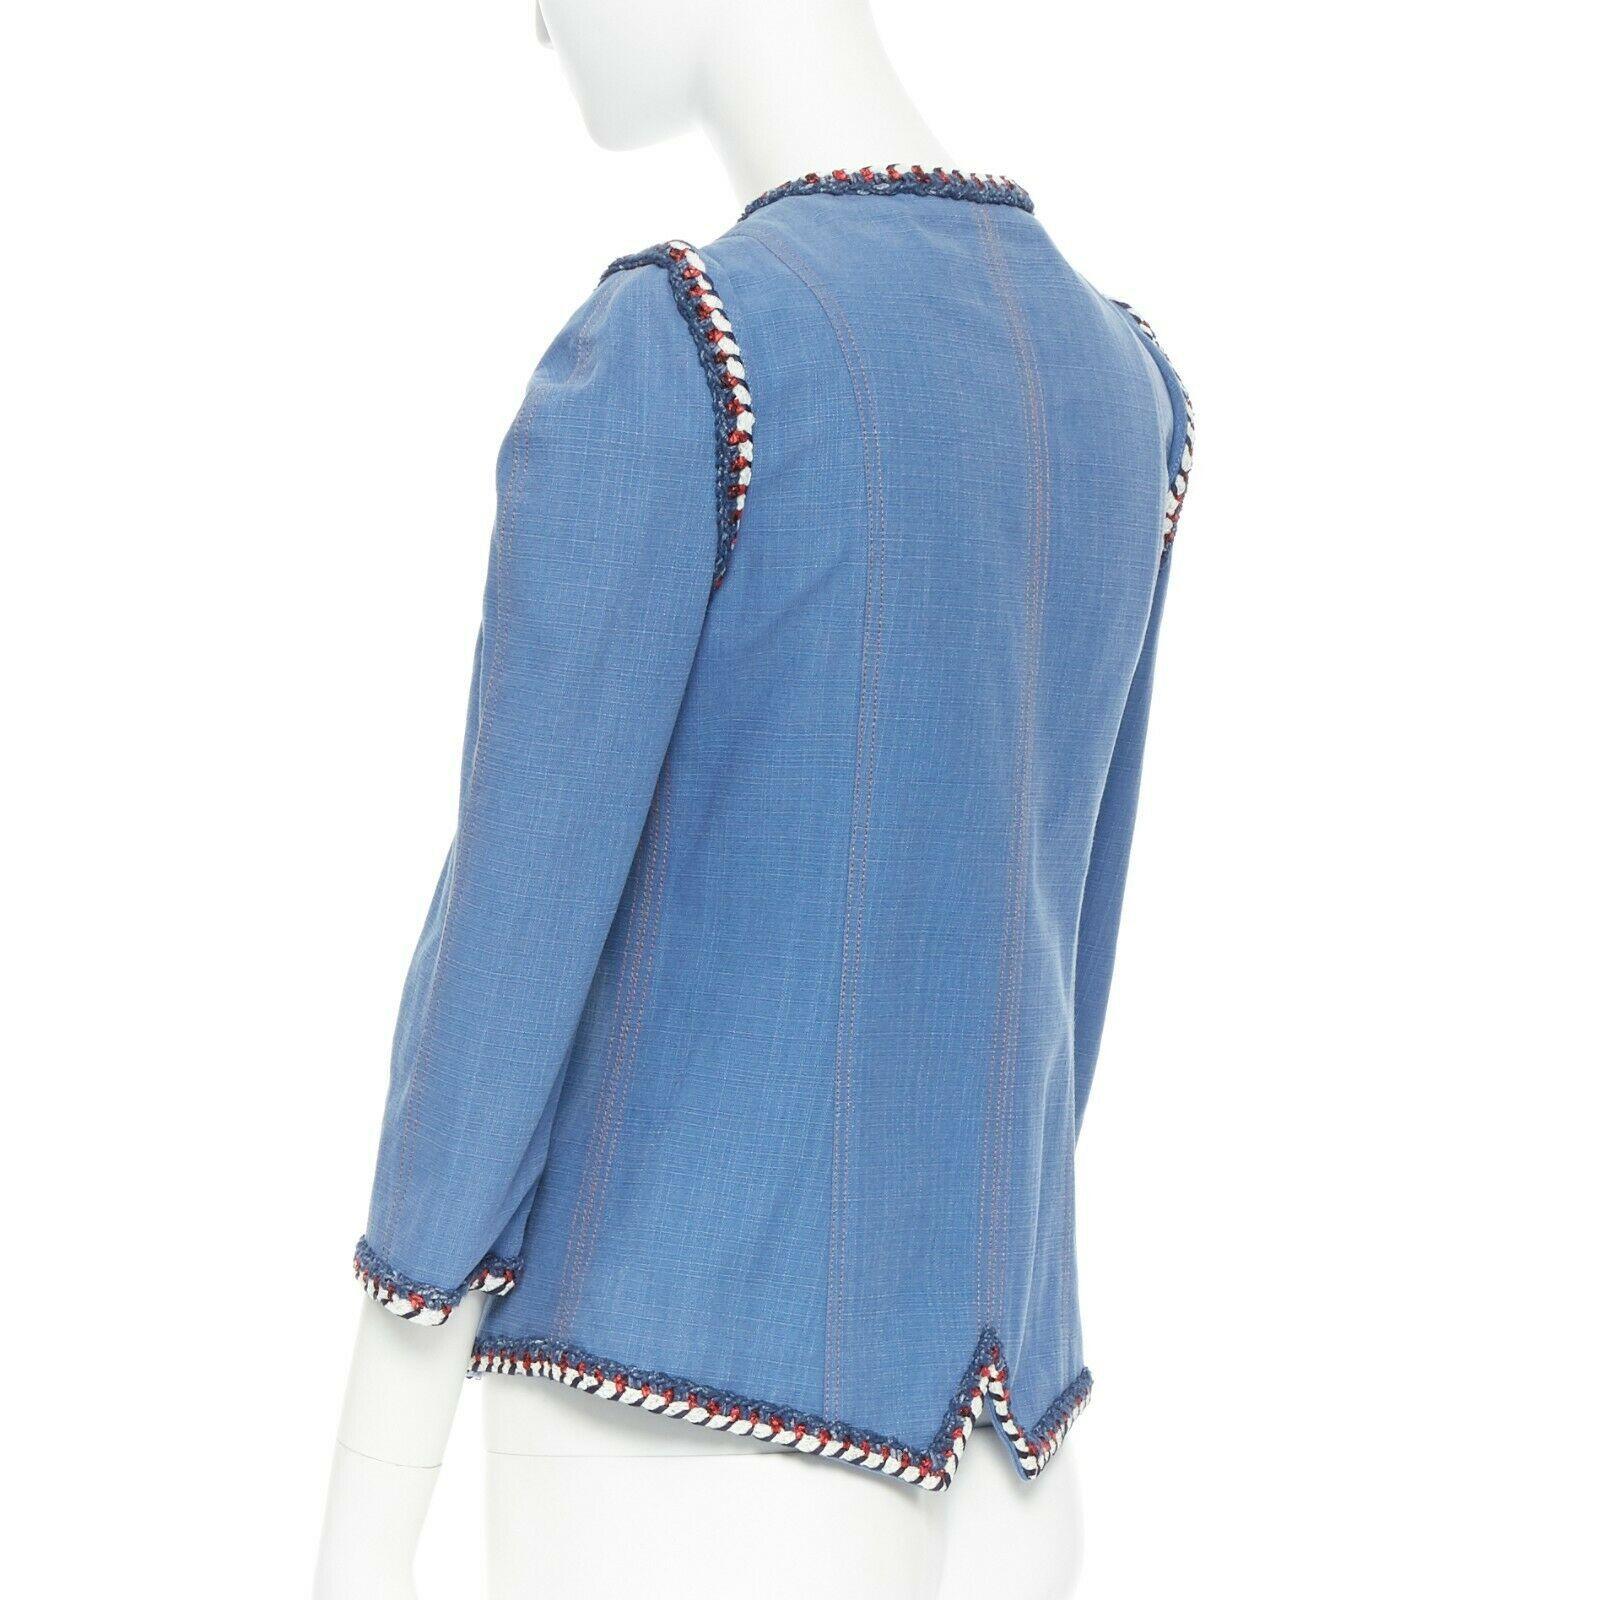 runway CHANEL 2013 tweed trimmings 3/4 sleeves blue denim jacket FR34 XS 1